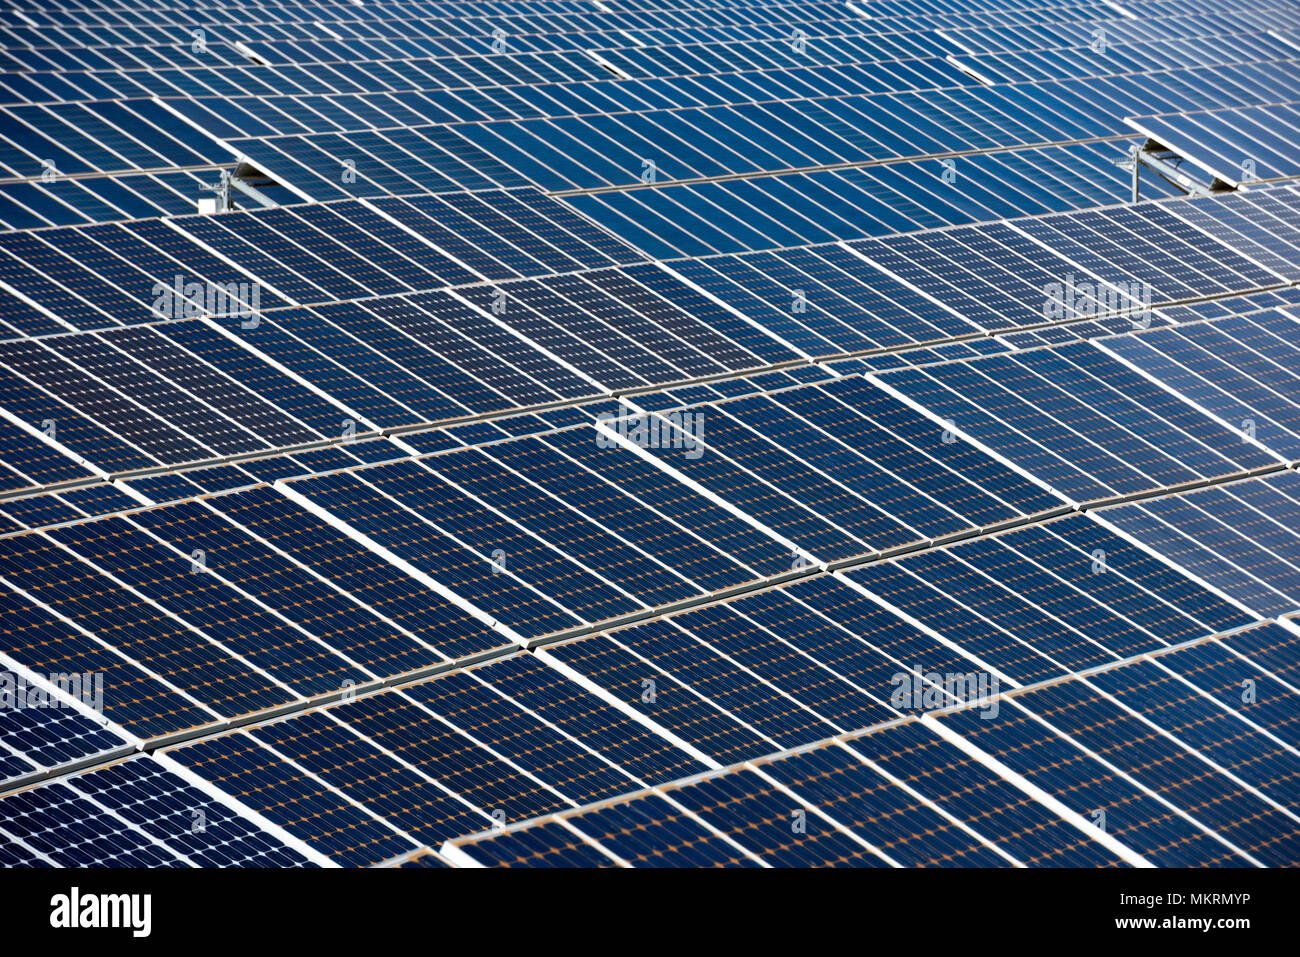 Gros plan d'une rangée de panneaux solaires dans un champ ouvert avec de multiples panneaux d'énergie solaire, Calasparra, Murcia, Espagne Banque D'Images